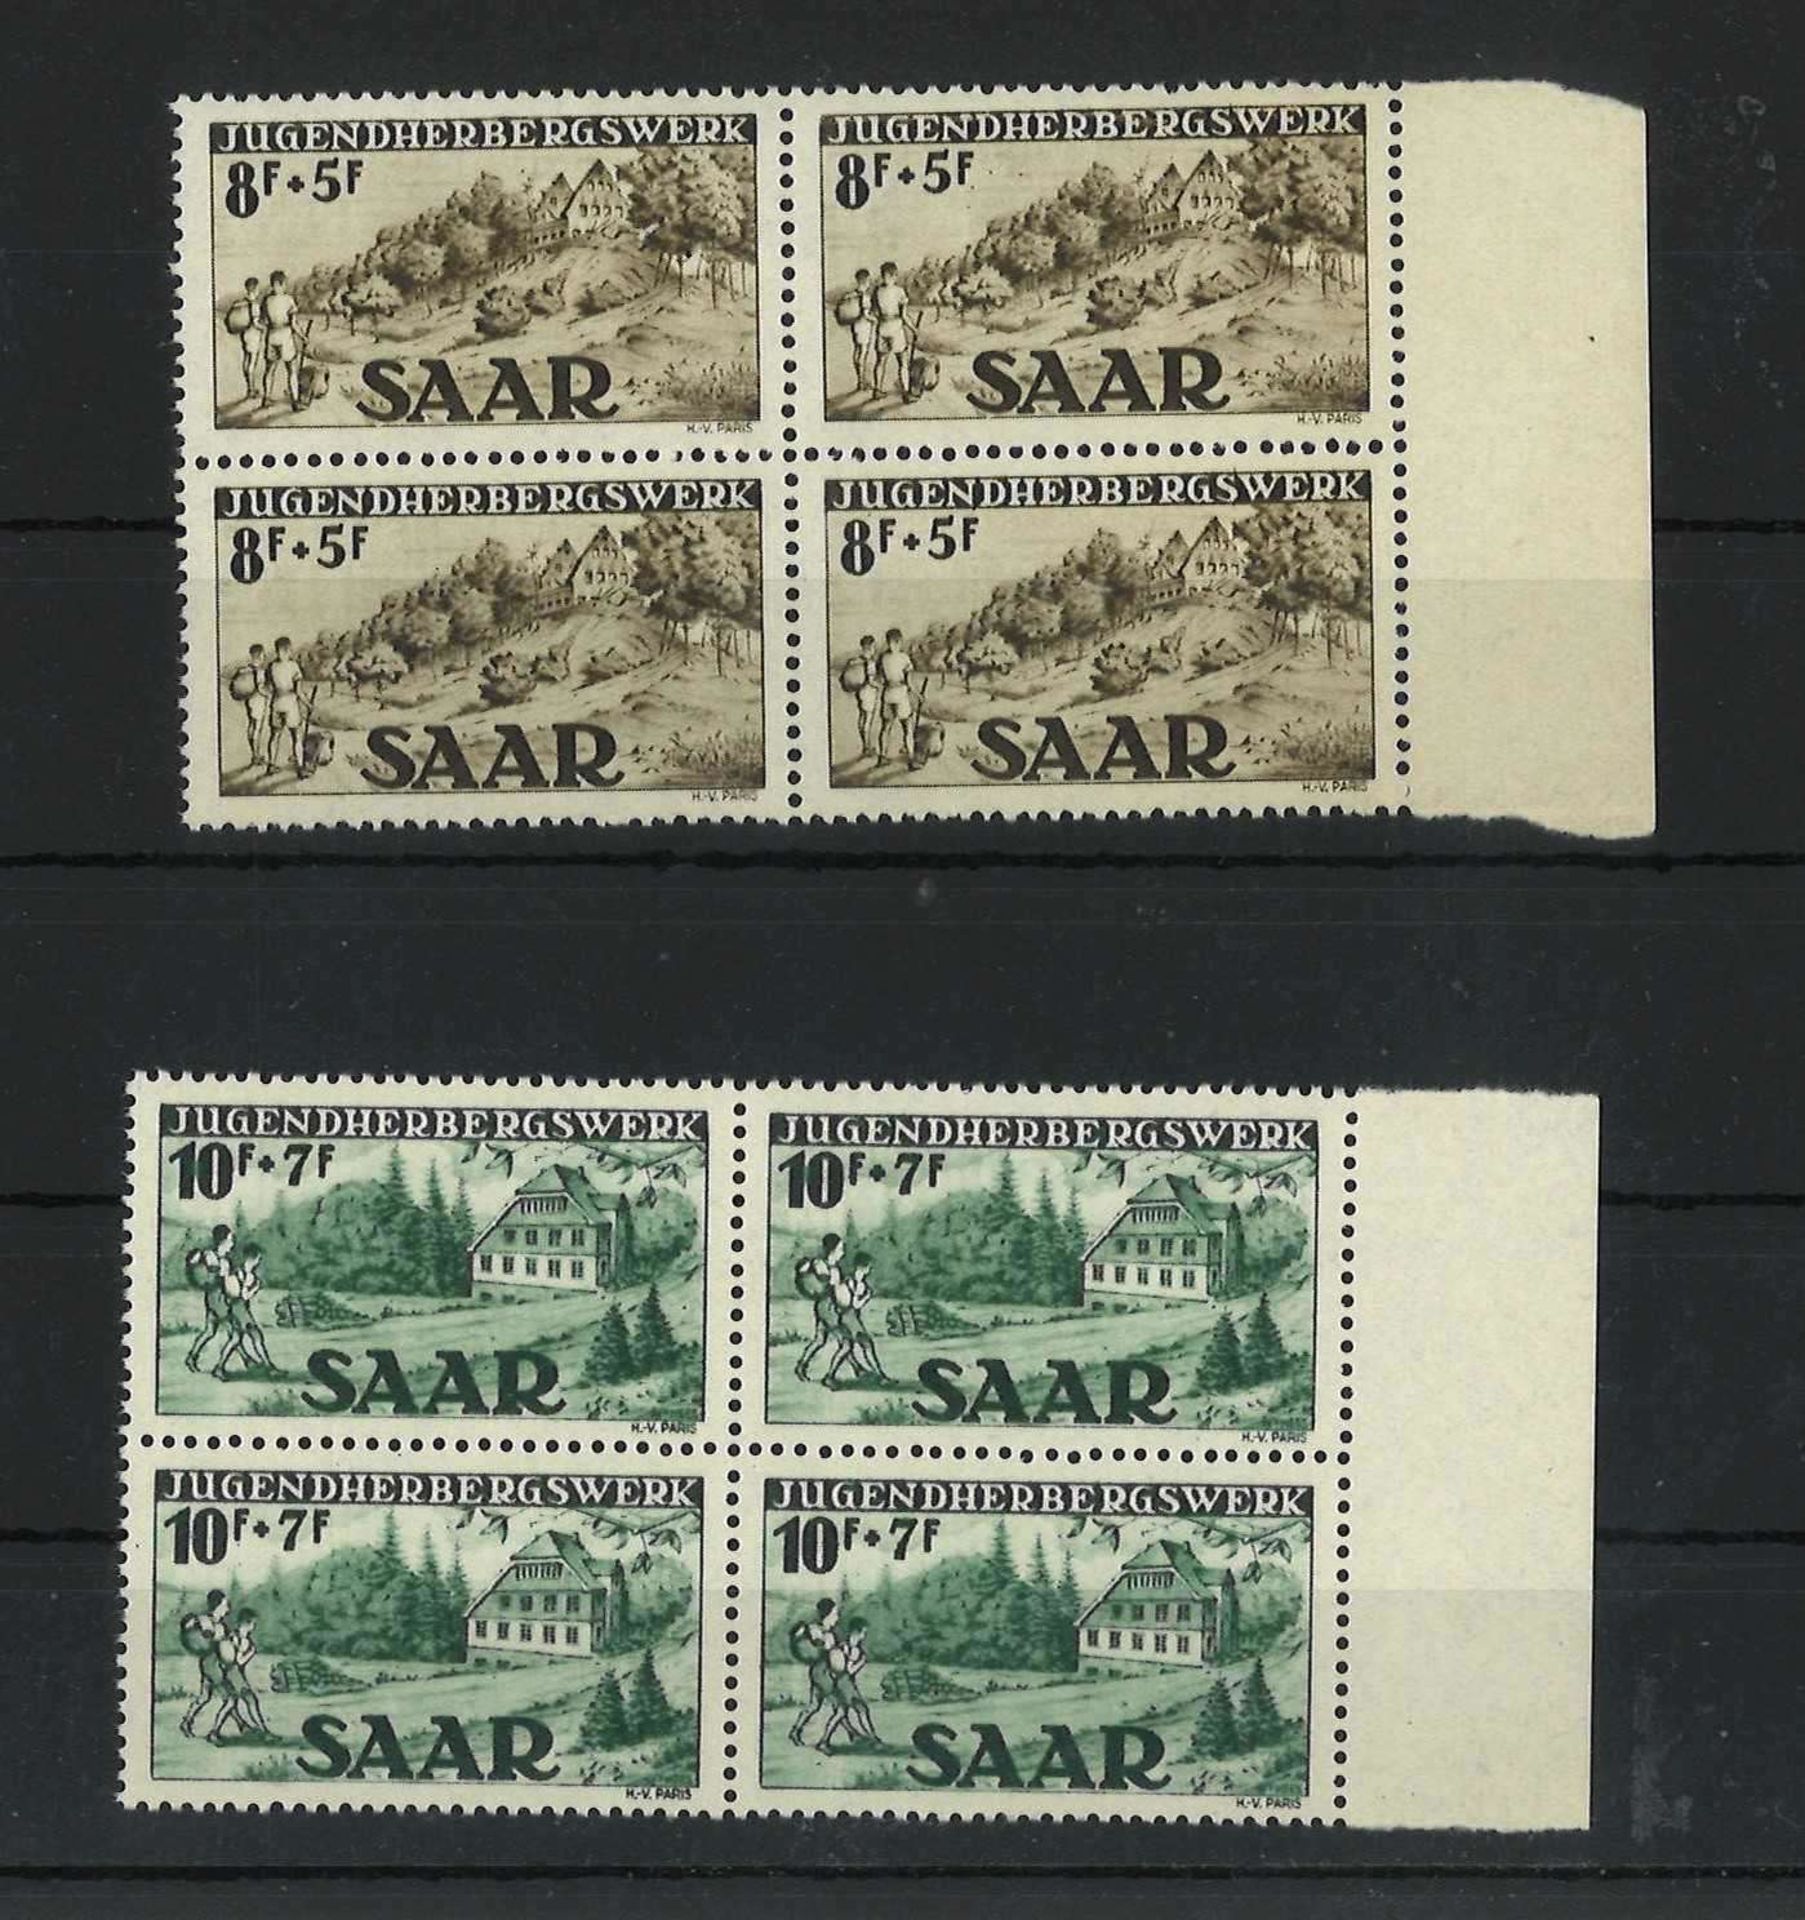 Saarland 1949, MI 262I 263II, Viererblock, Jugendherbergswerk, postfrischSaarland 1949, MI 262I